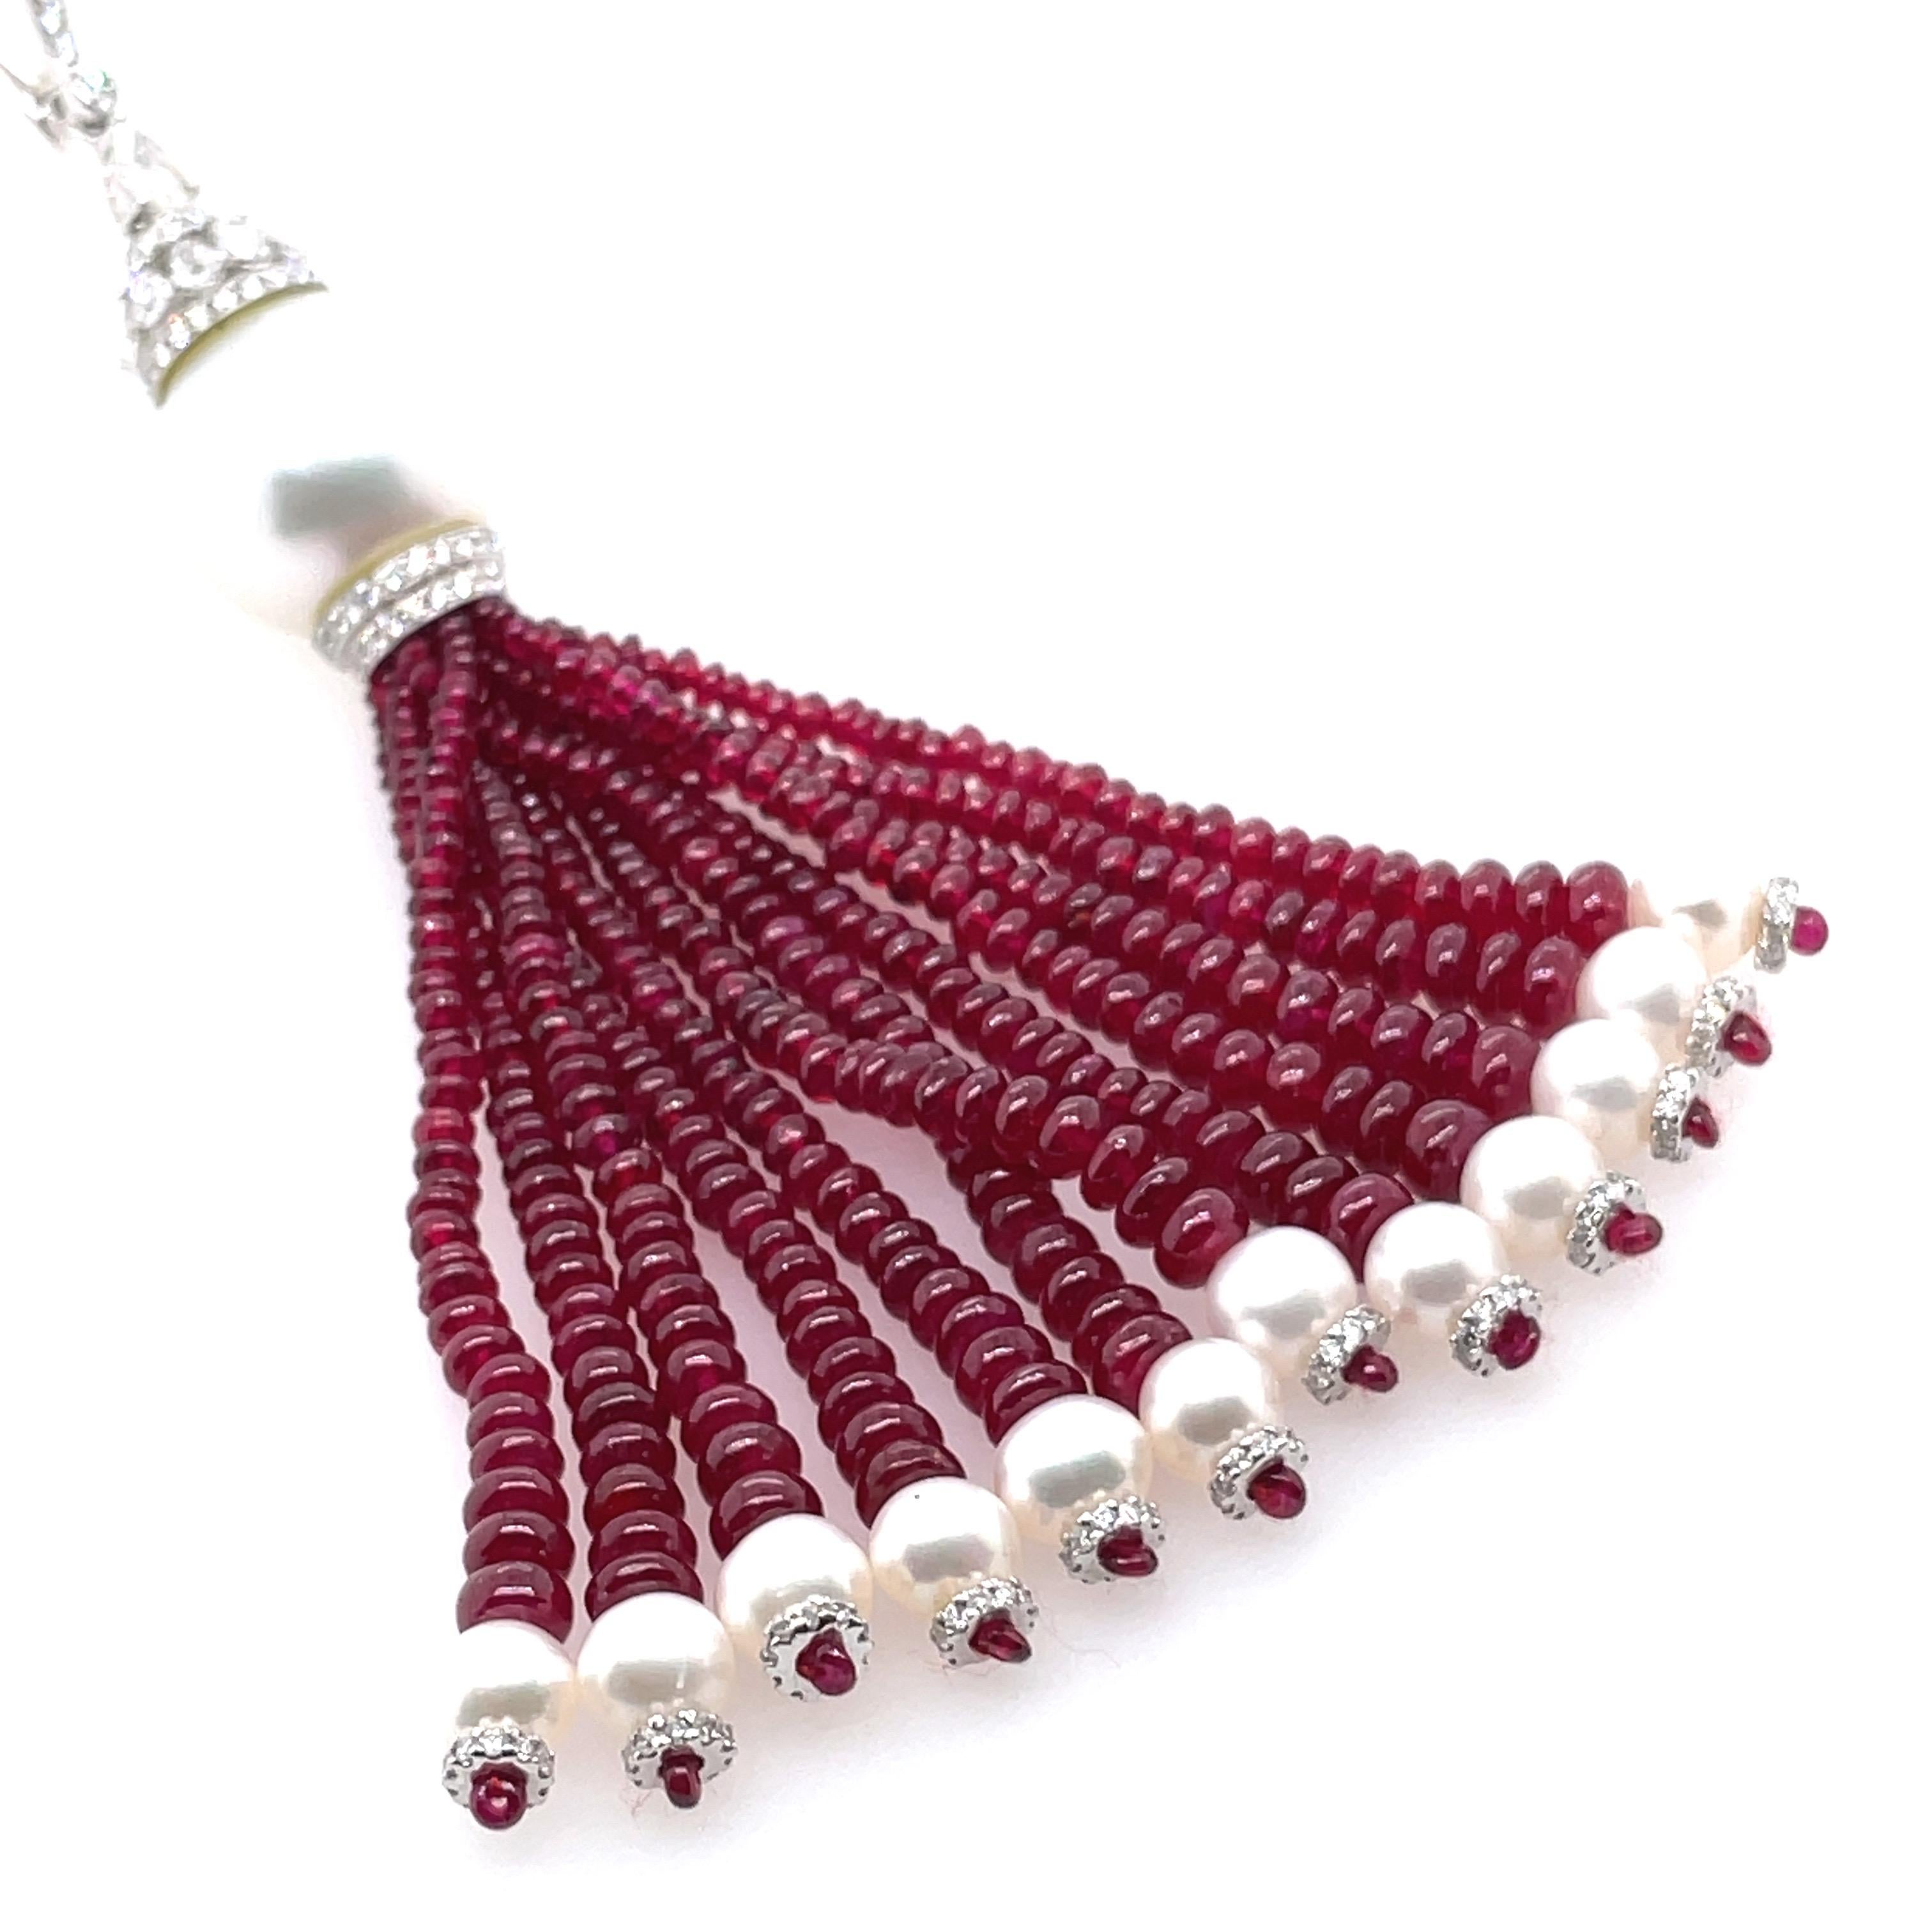 Avec des perles de rubis totalisant 62,10 carats et des perles stupéfiantes nichées à 8,55 carats, il respire l'opulence à chaque tournant. 

Les rubis, scientifiquement connus sous le nom de corindon, sont formés principalement d'oxyde d'aluminium